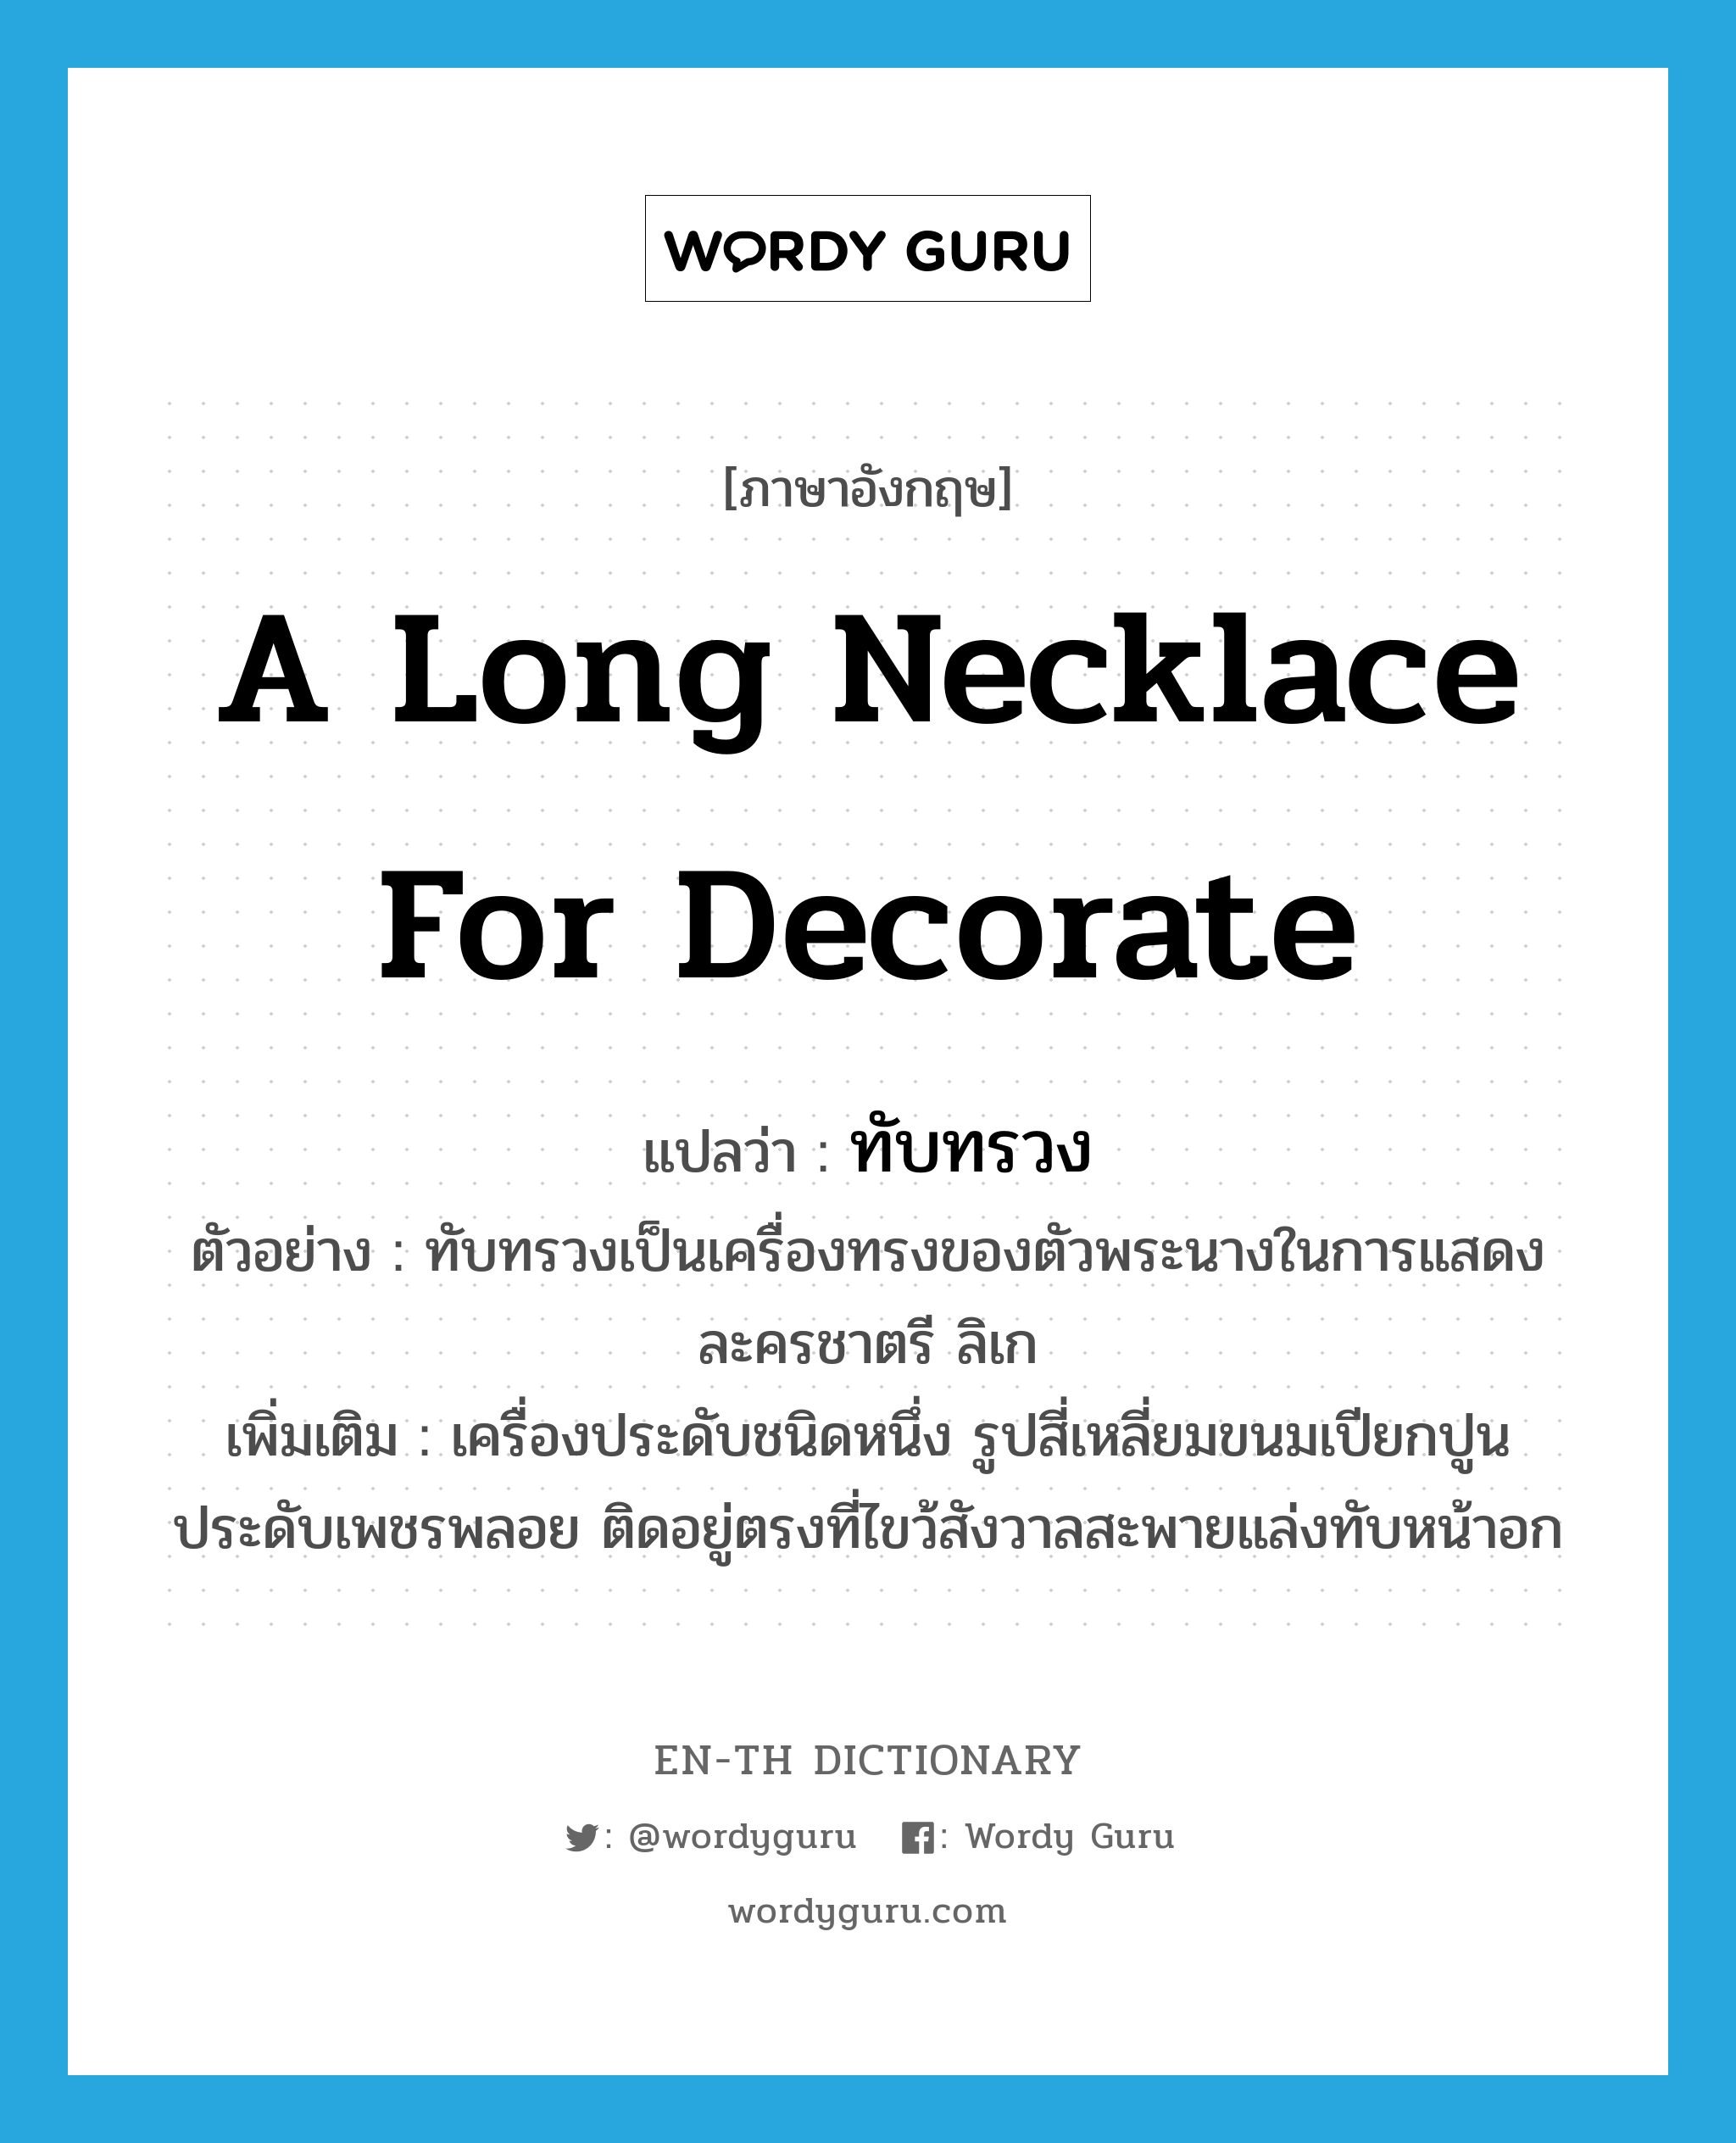 a long necklace for decorate แปลว่า?, คำศัพท์ภาษาอังกฤษ a long necklace for decorate แปลว่า ทับทรวง ประเภท N ตัวอย่าง ทับทรวงเป็นเครื่องทรงของตัวพระนางในการแสดงละครชาตรี ลิเก เพิ่มเติม เครื่องประดับชนิดหนึ่ง รูปสี่เหลี่ยมขนมเปียกปูน ประดับเพชรพลอย ติดอยู่ตรงที่ไขว้สังวาลสะพายแล่งทับหน้าอก หมวด N